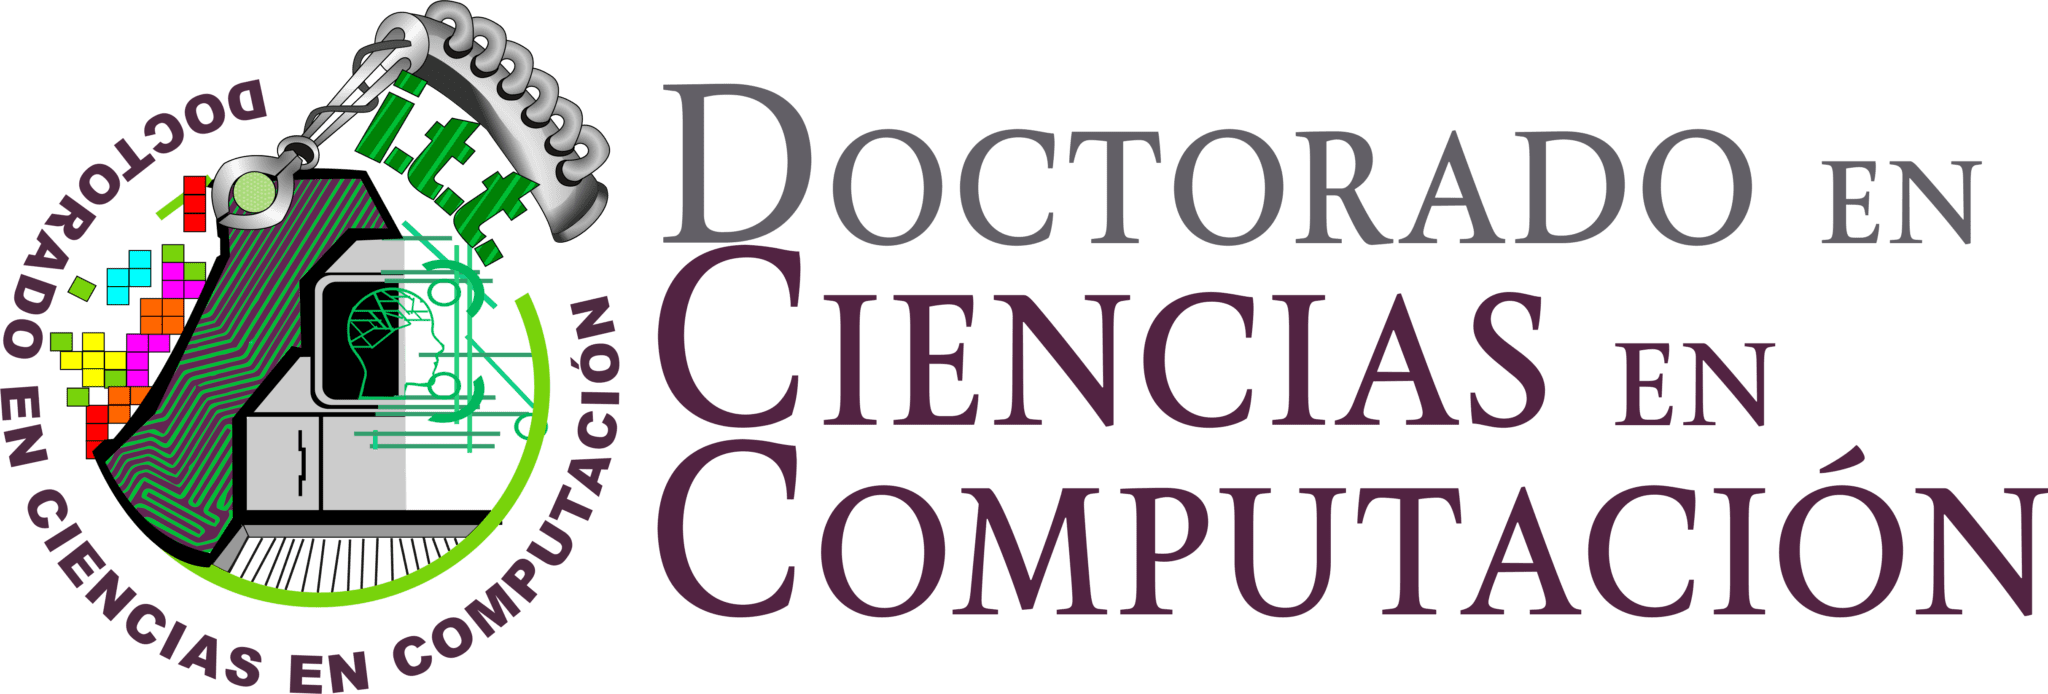 DOCTORADO EN CIENCIAS DE LA COMPUTACION_HEADING